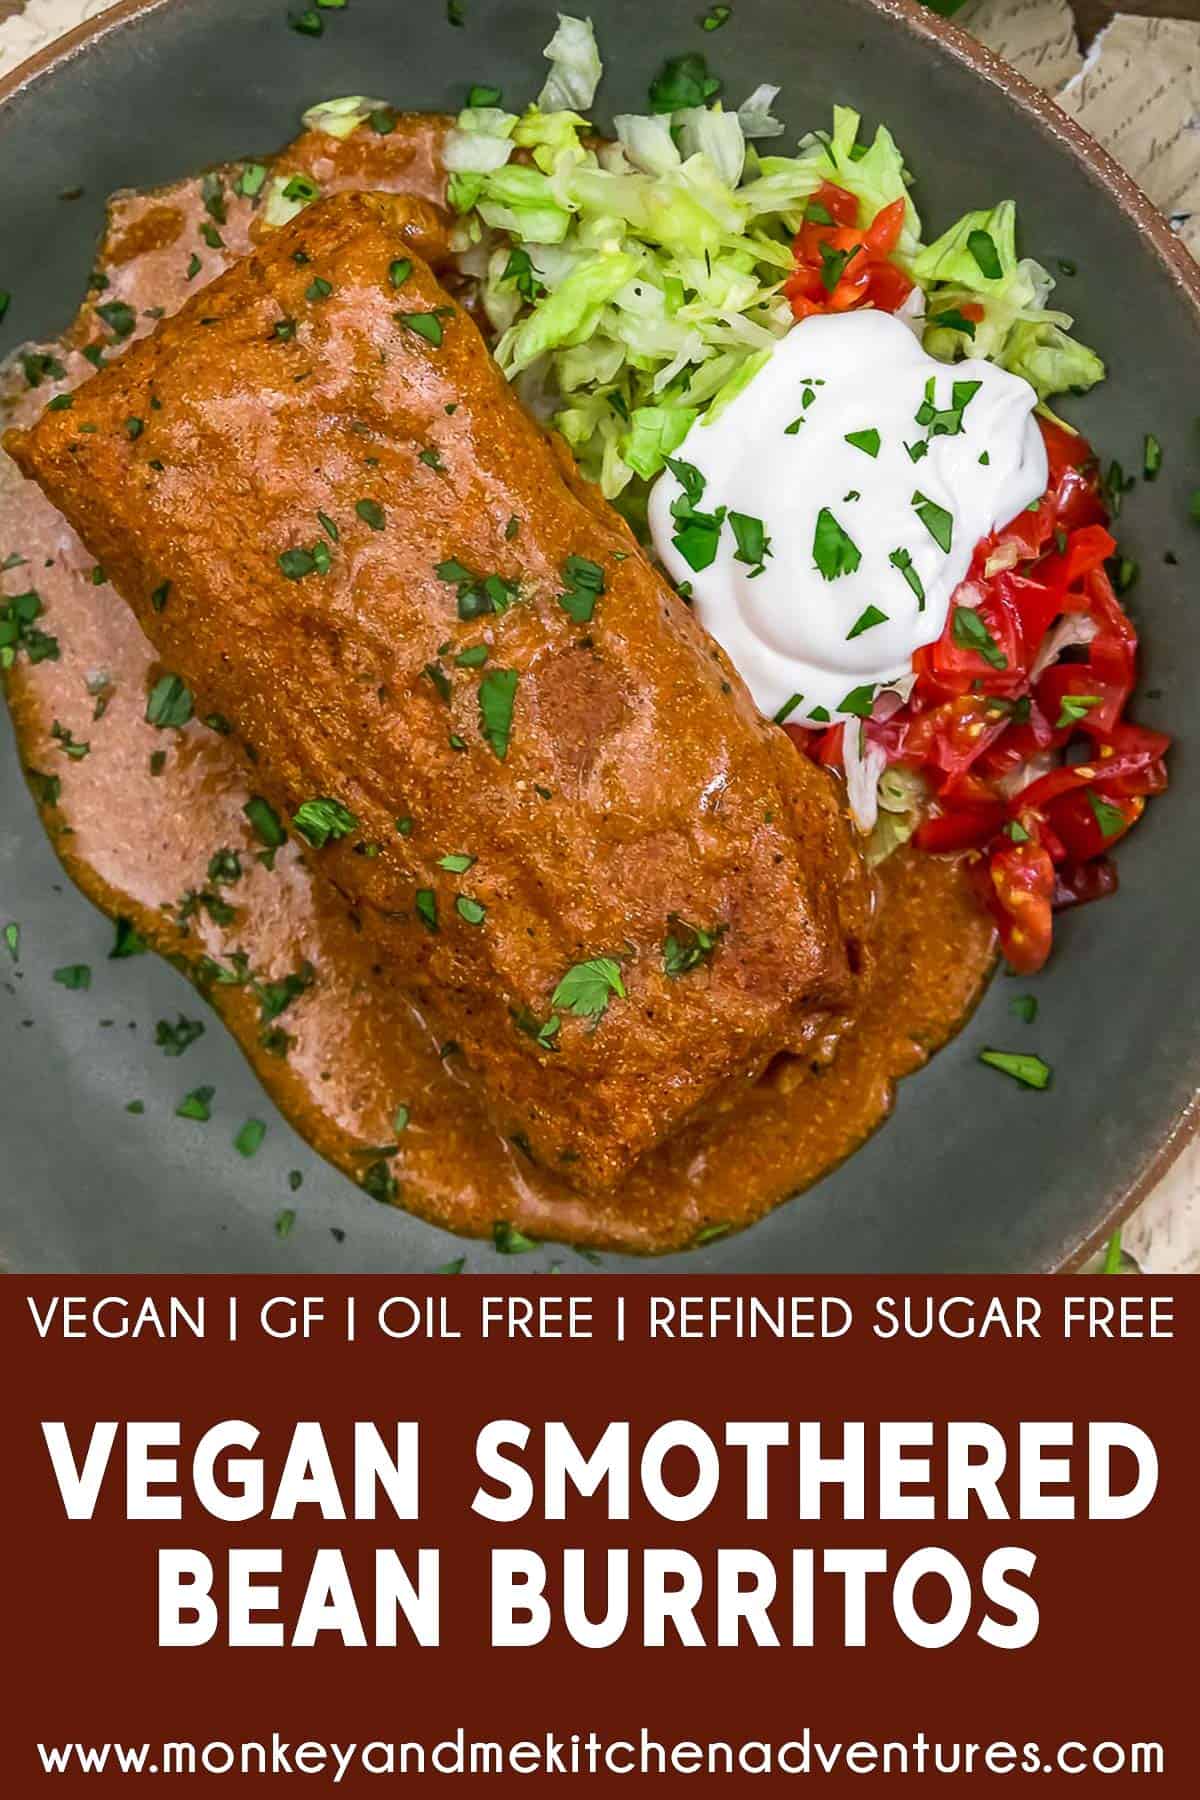 Vegan Smothered Bean Burritos with text description